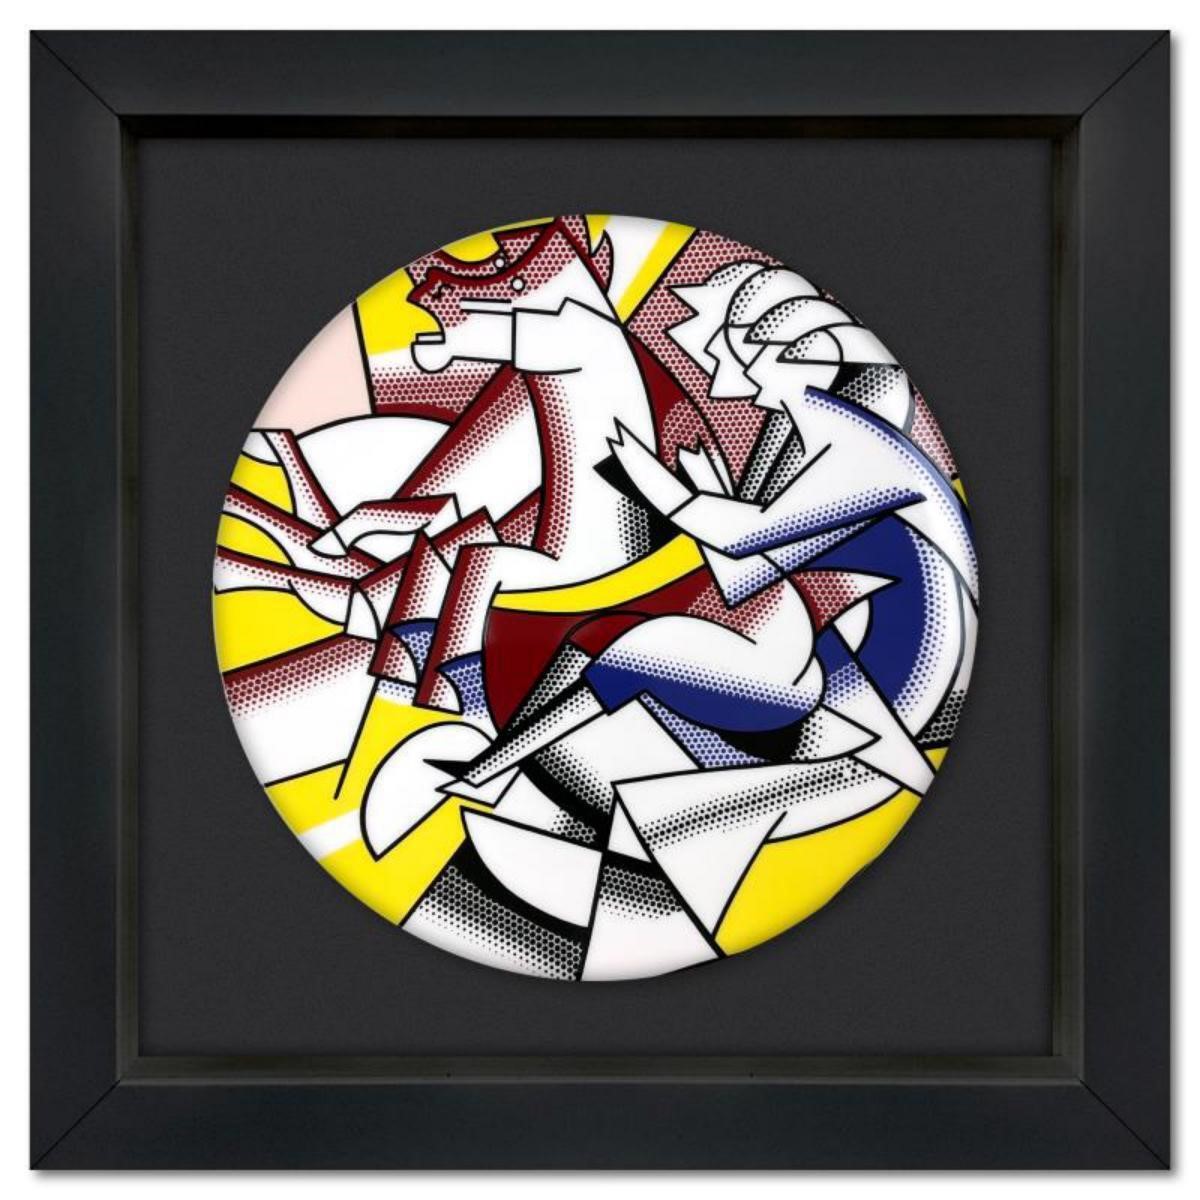 Roy Lichtenstein (1923-1997), "The Red Horseman" F